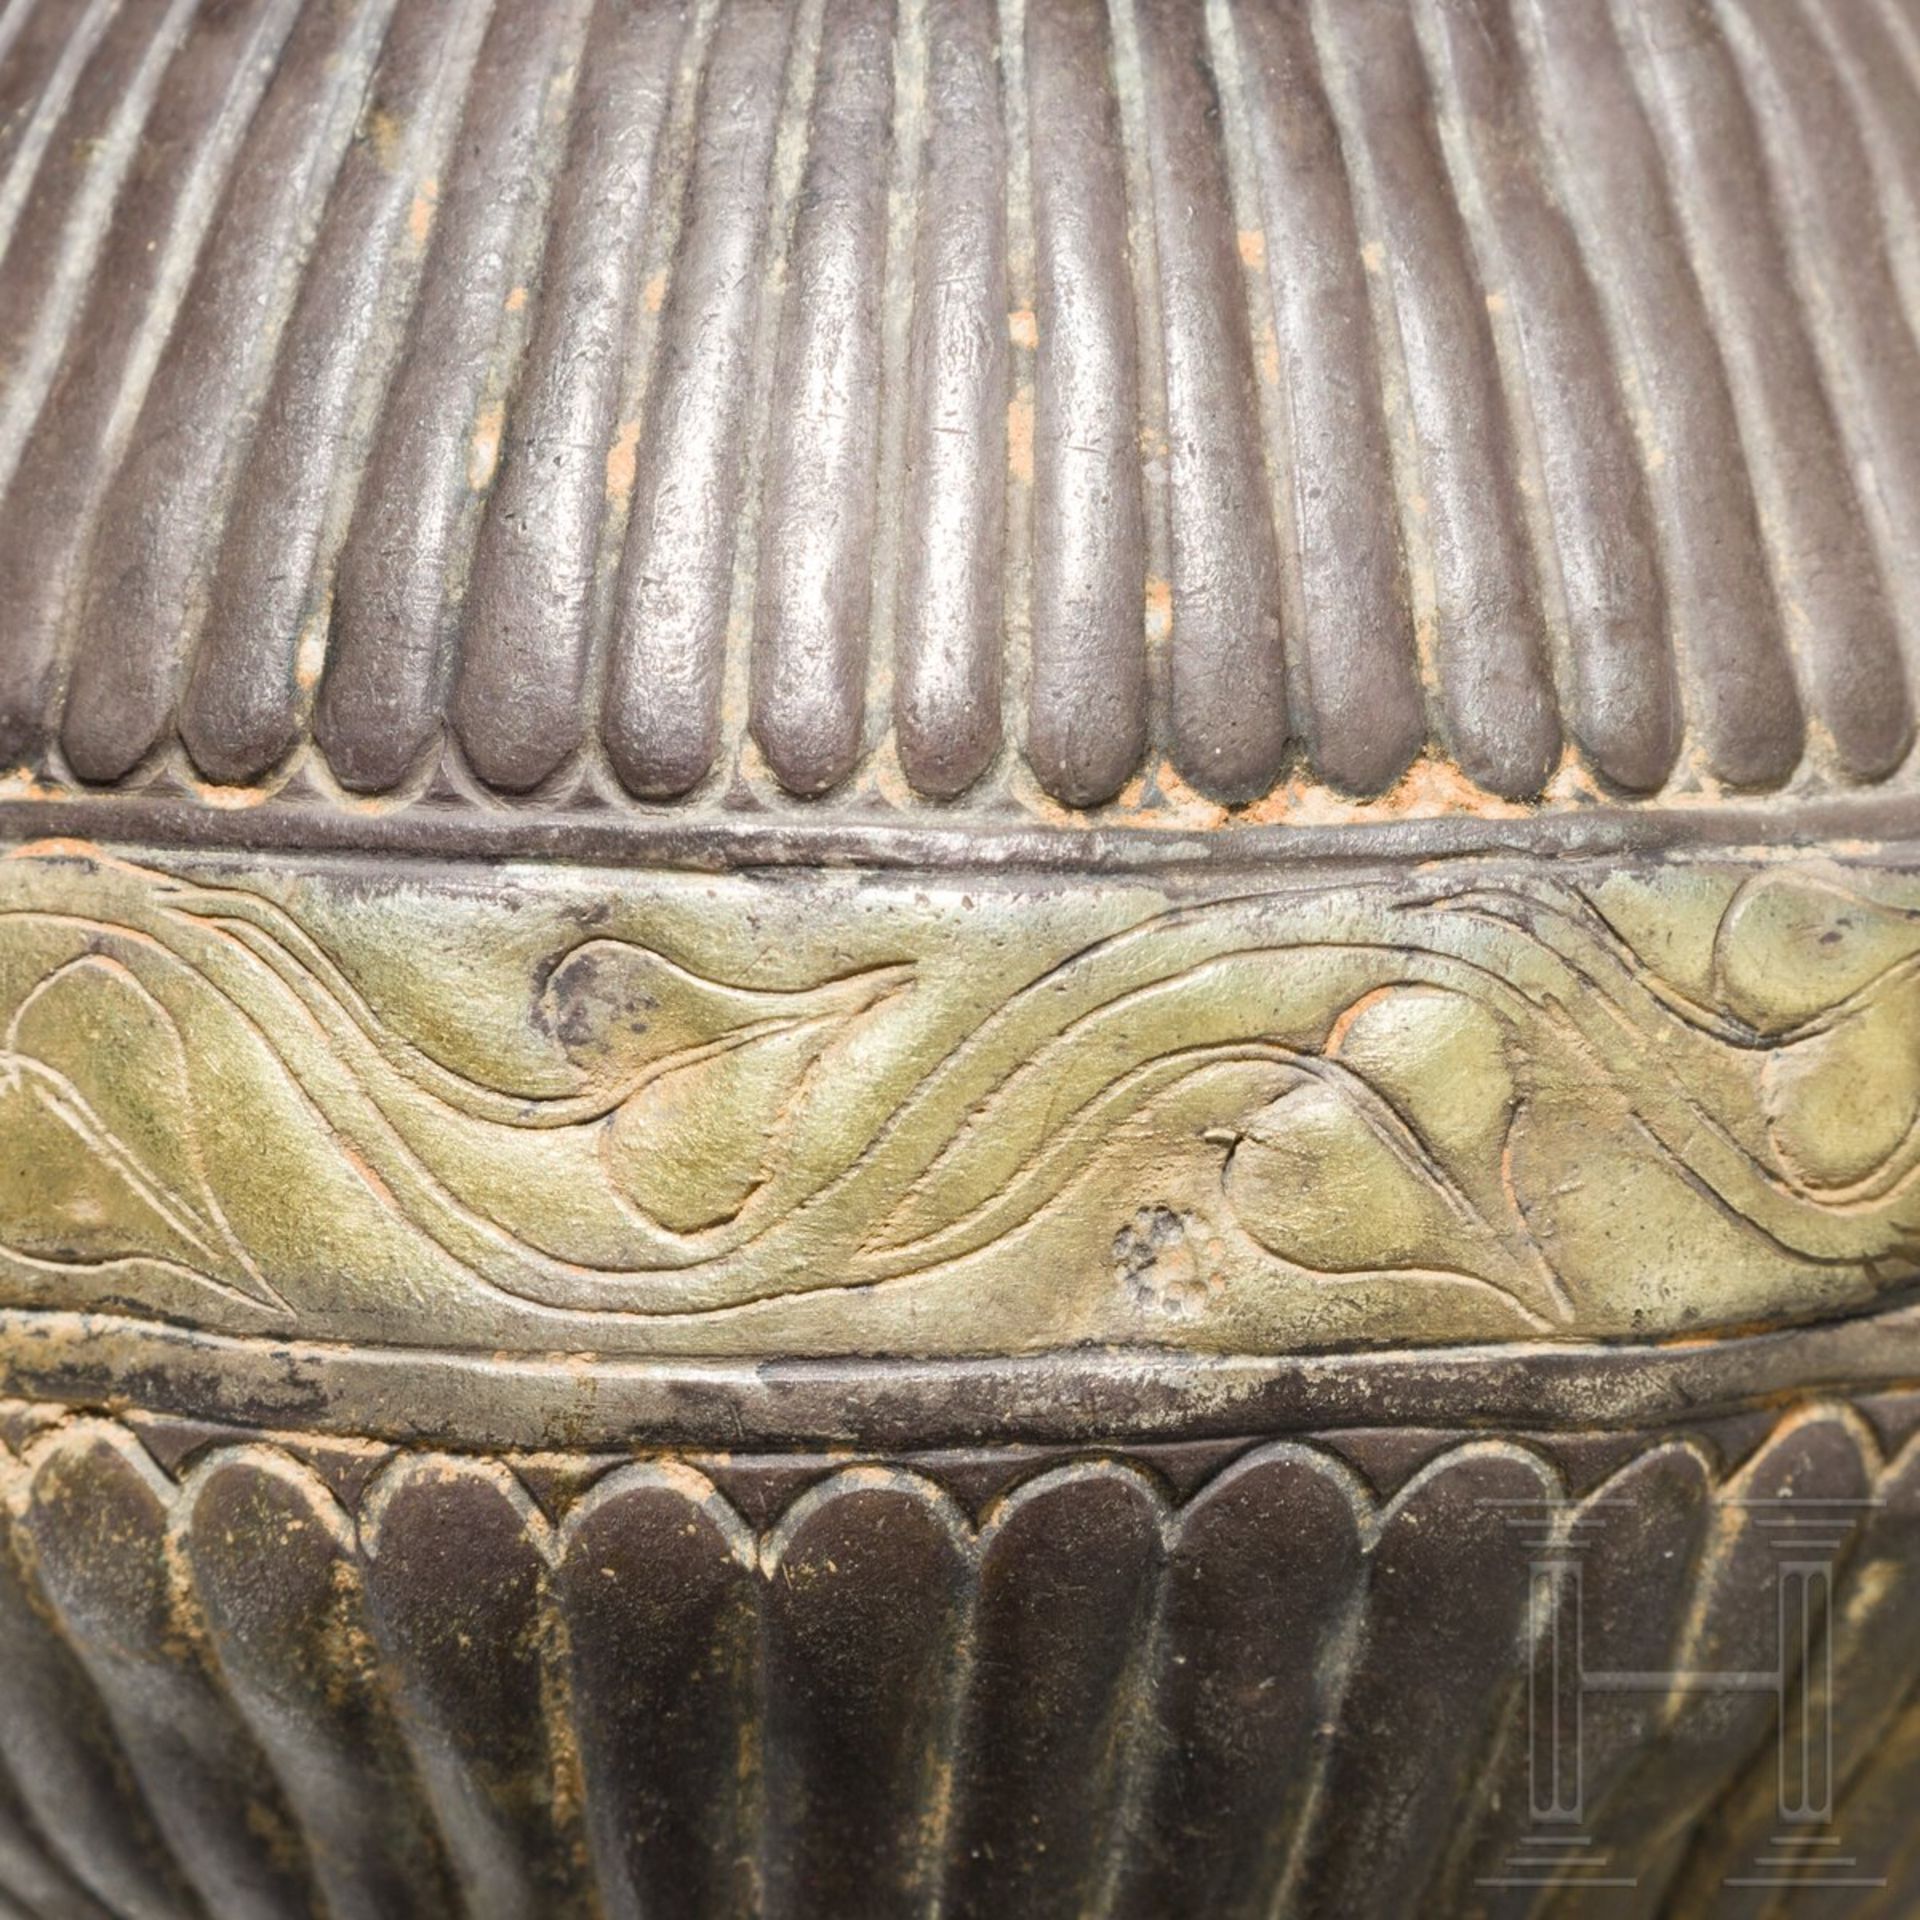 Silbergefäß mit getriebenem und geritztem Dekor, griechisch, 4. Jhdt. v. Chr. - Bild 3 aus 5